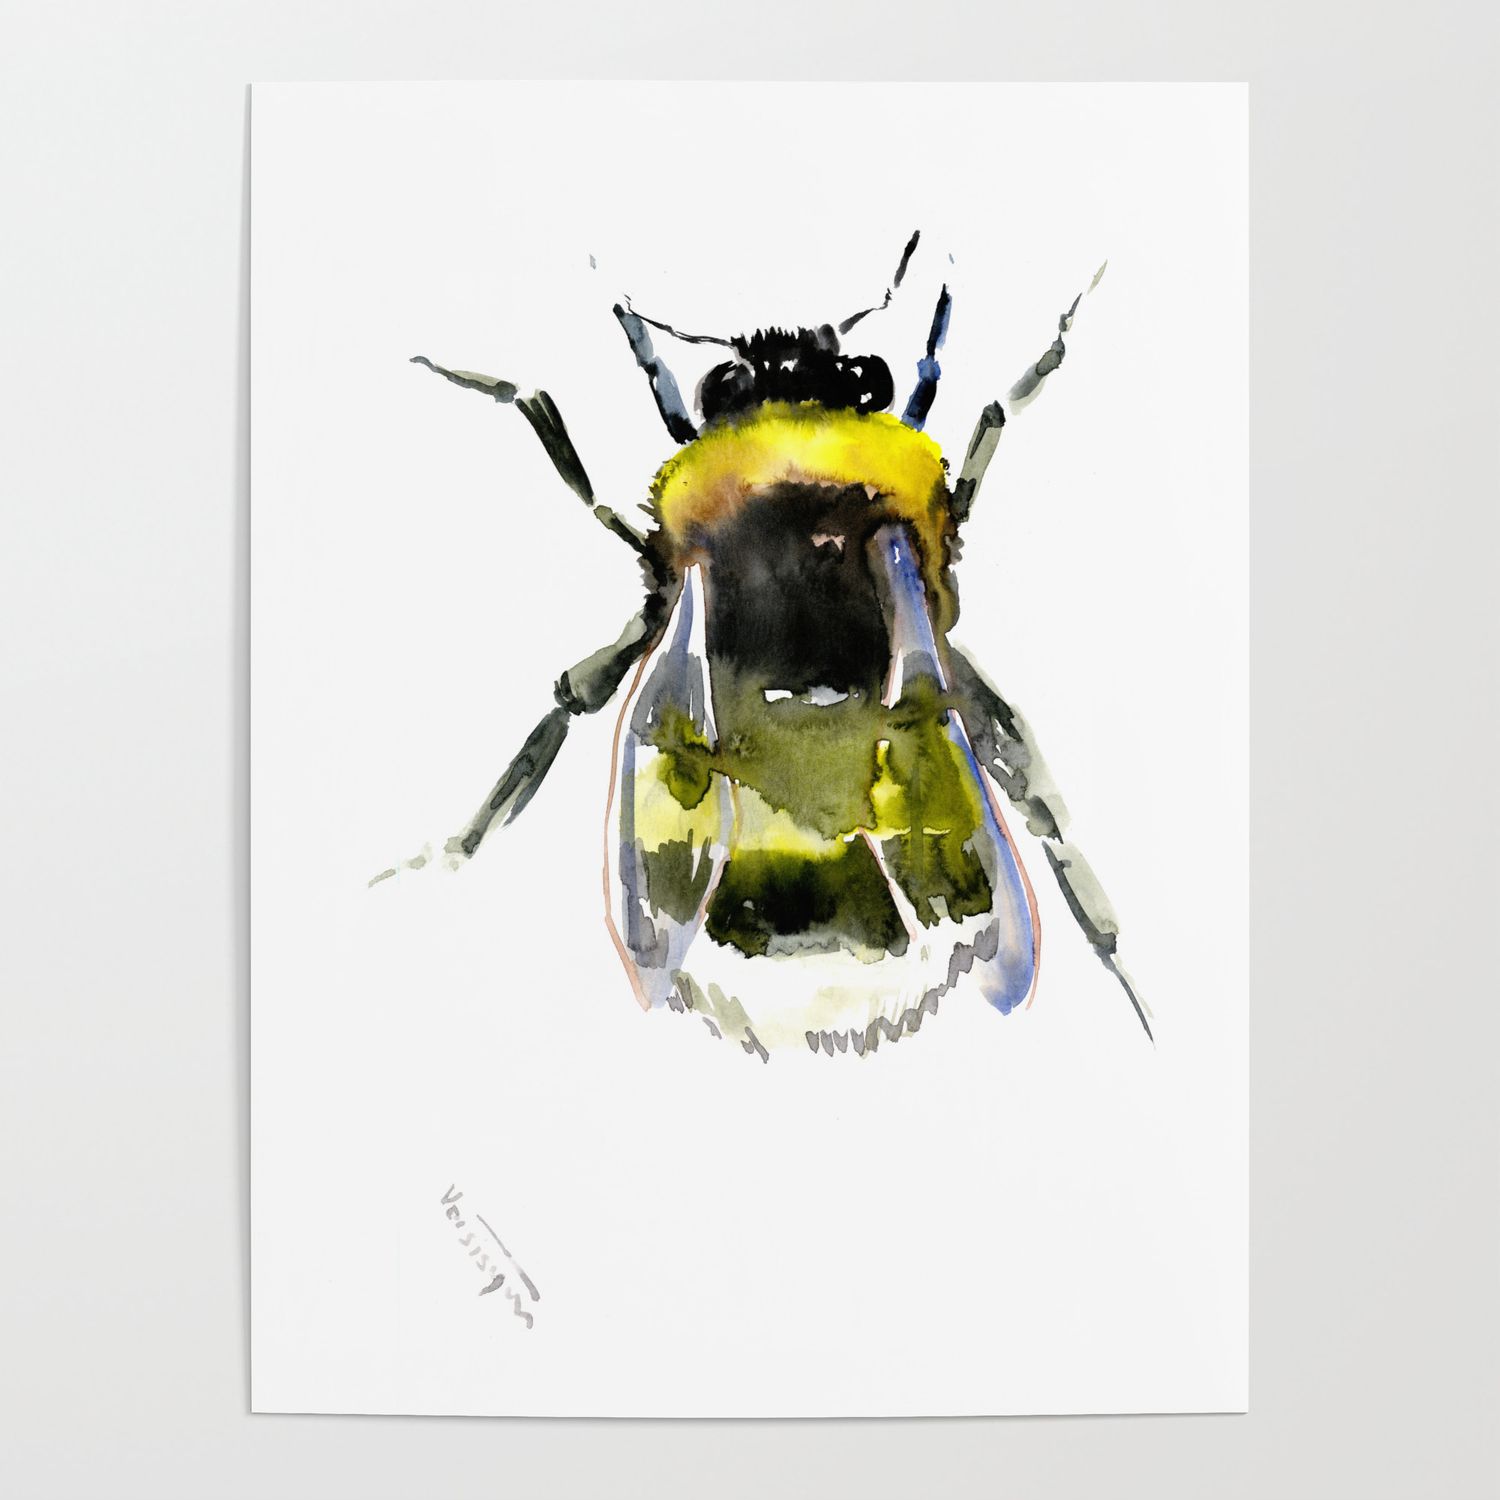 Bumblebee, bee artwork, bee design minimalist honey making design